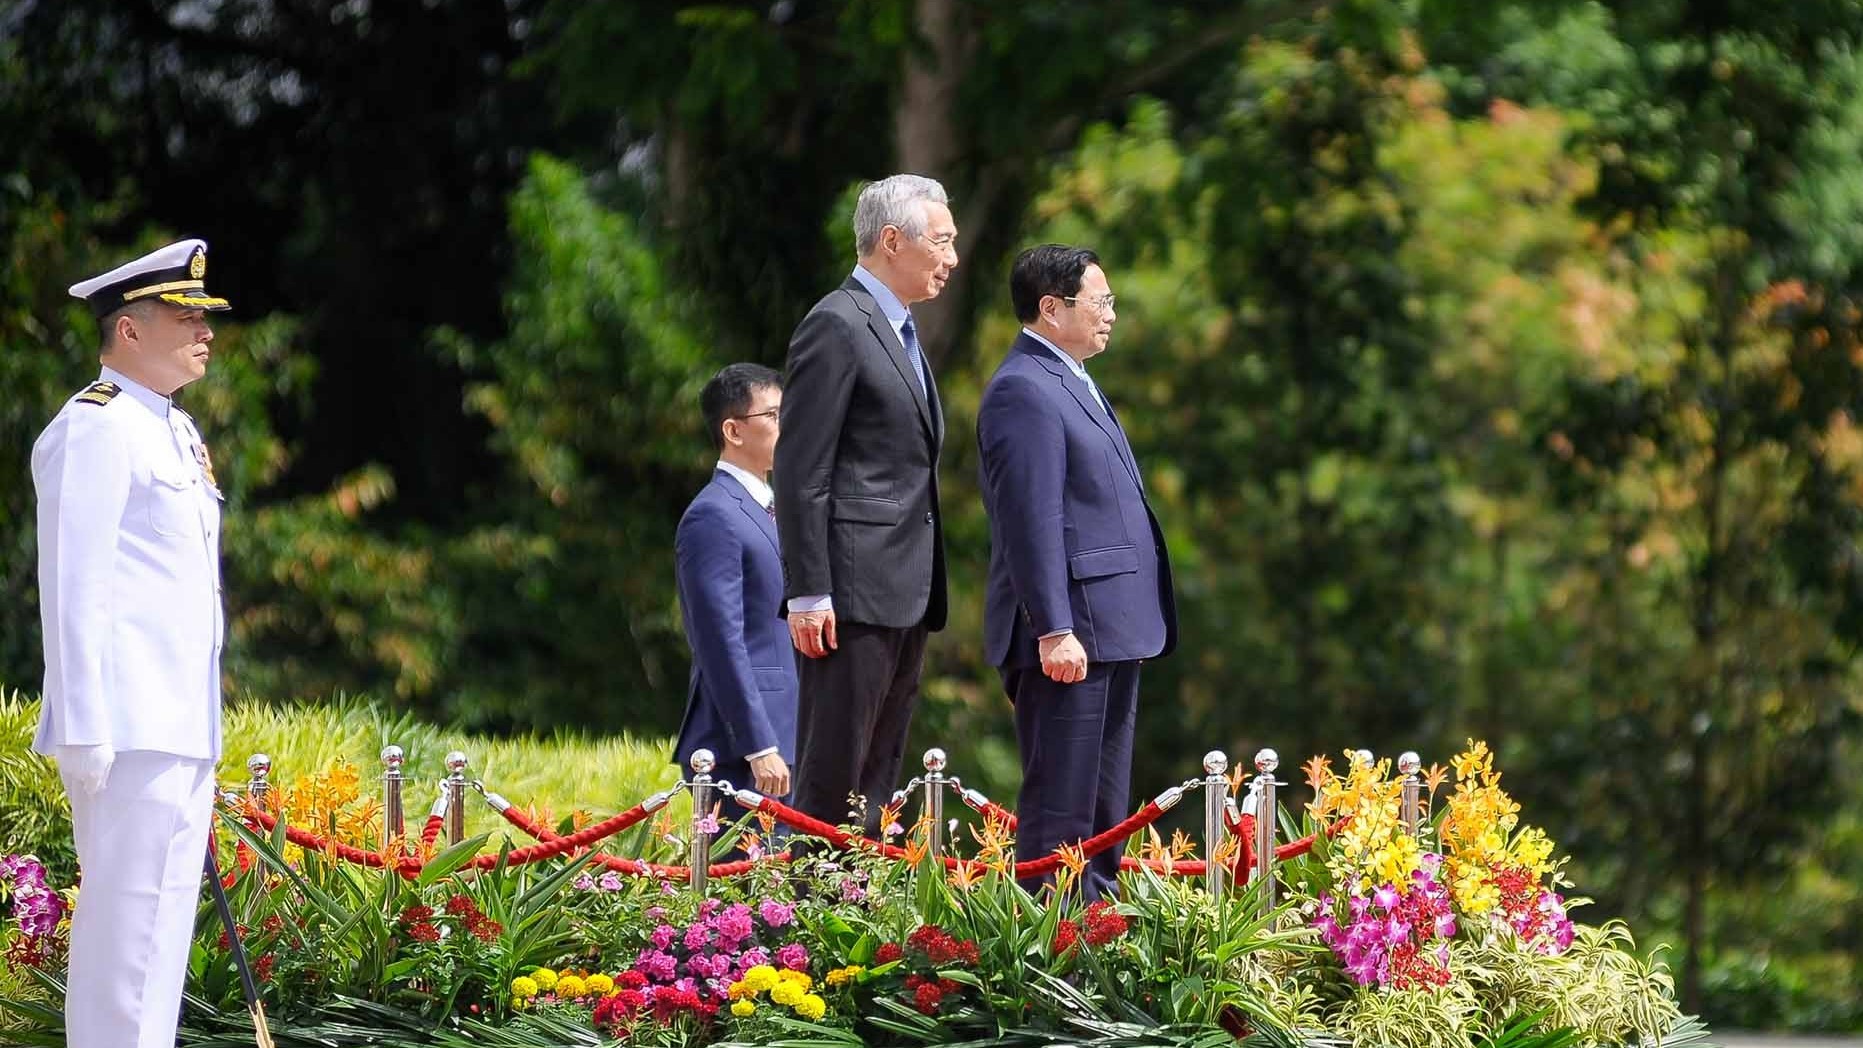 Lễ đón chính thức Thủ tướng Chính phủ Phạm Minh Chính và phu nhân thăm chính thức Singapore